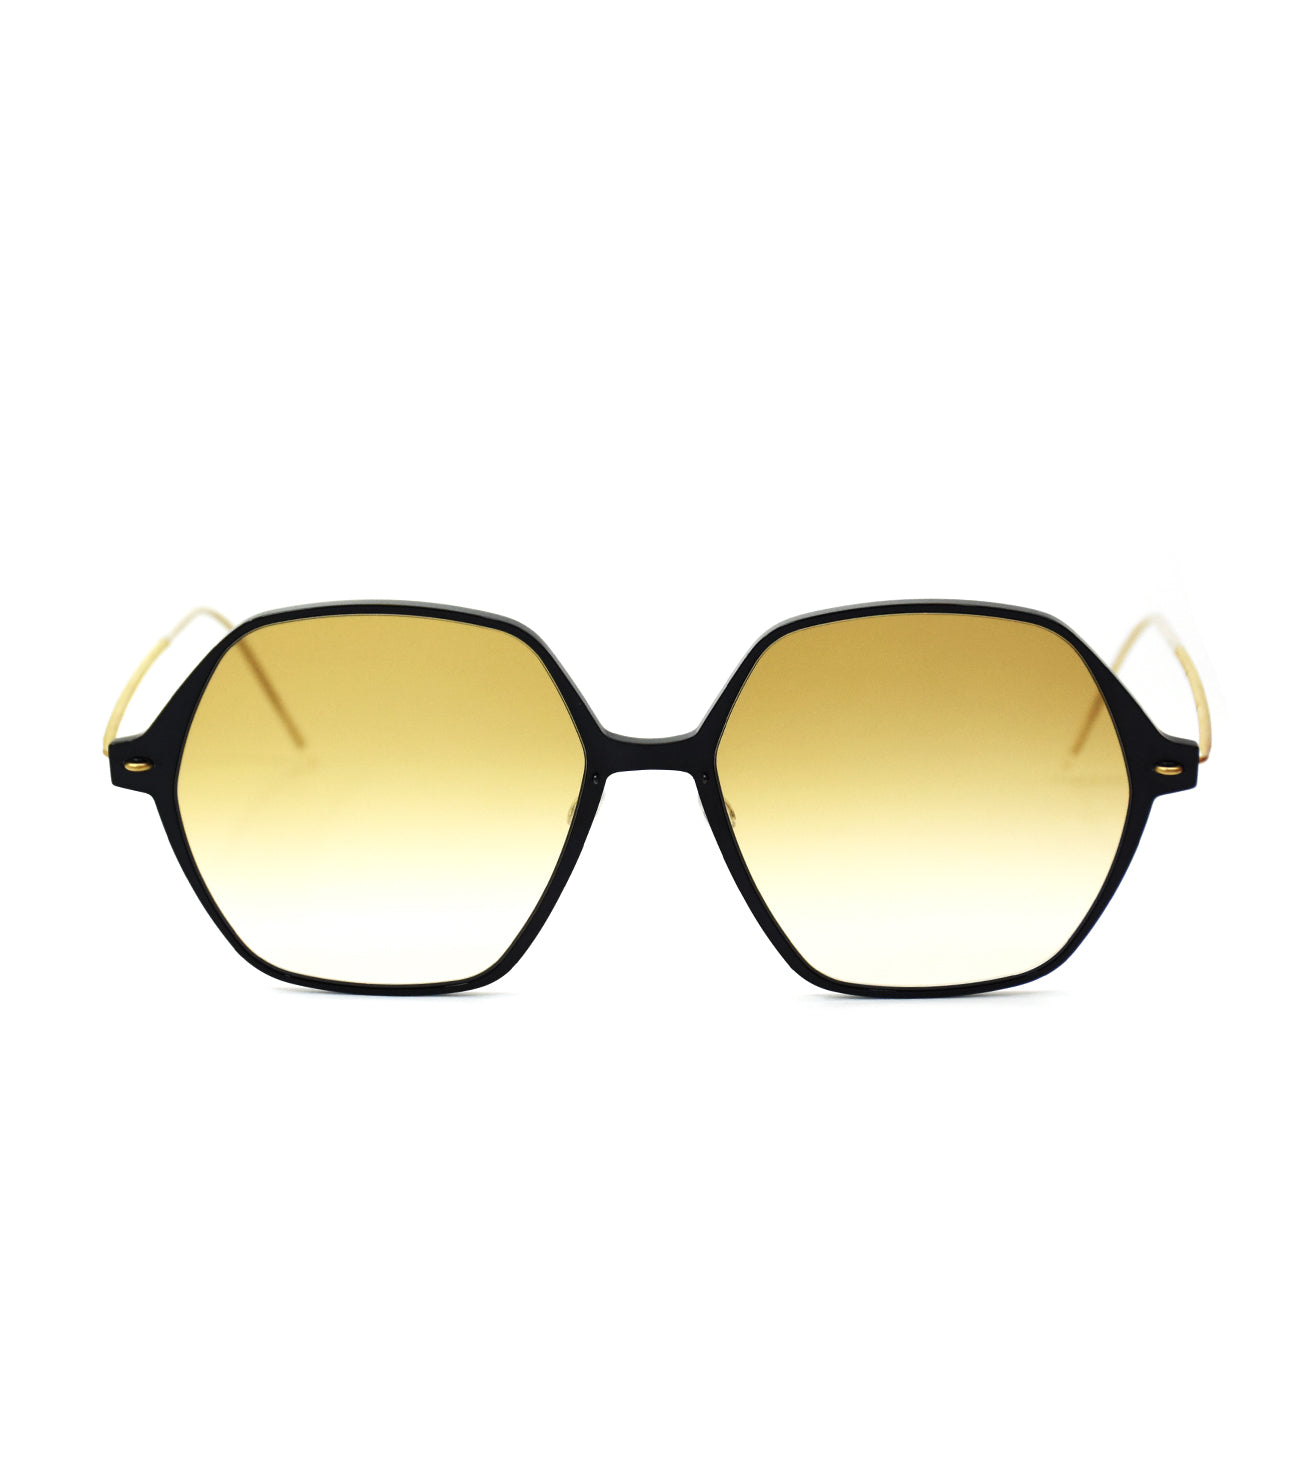 Lindberg Men's Brown Geometric Sunglasses